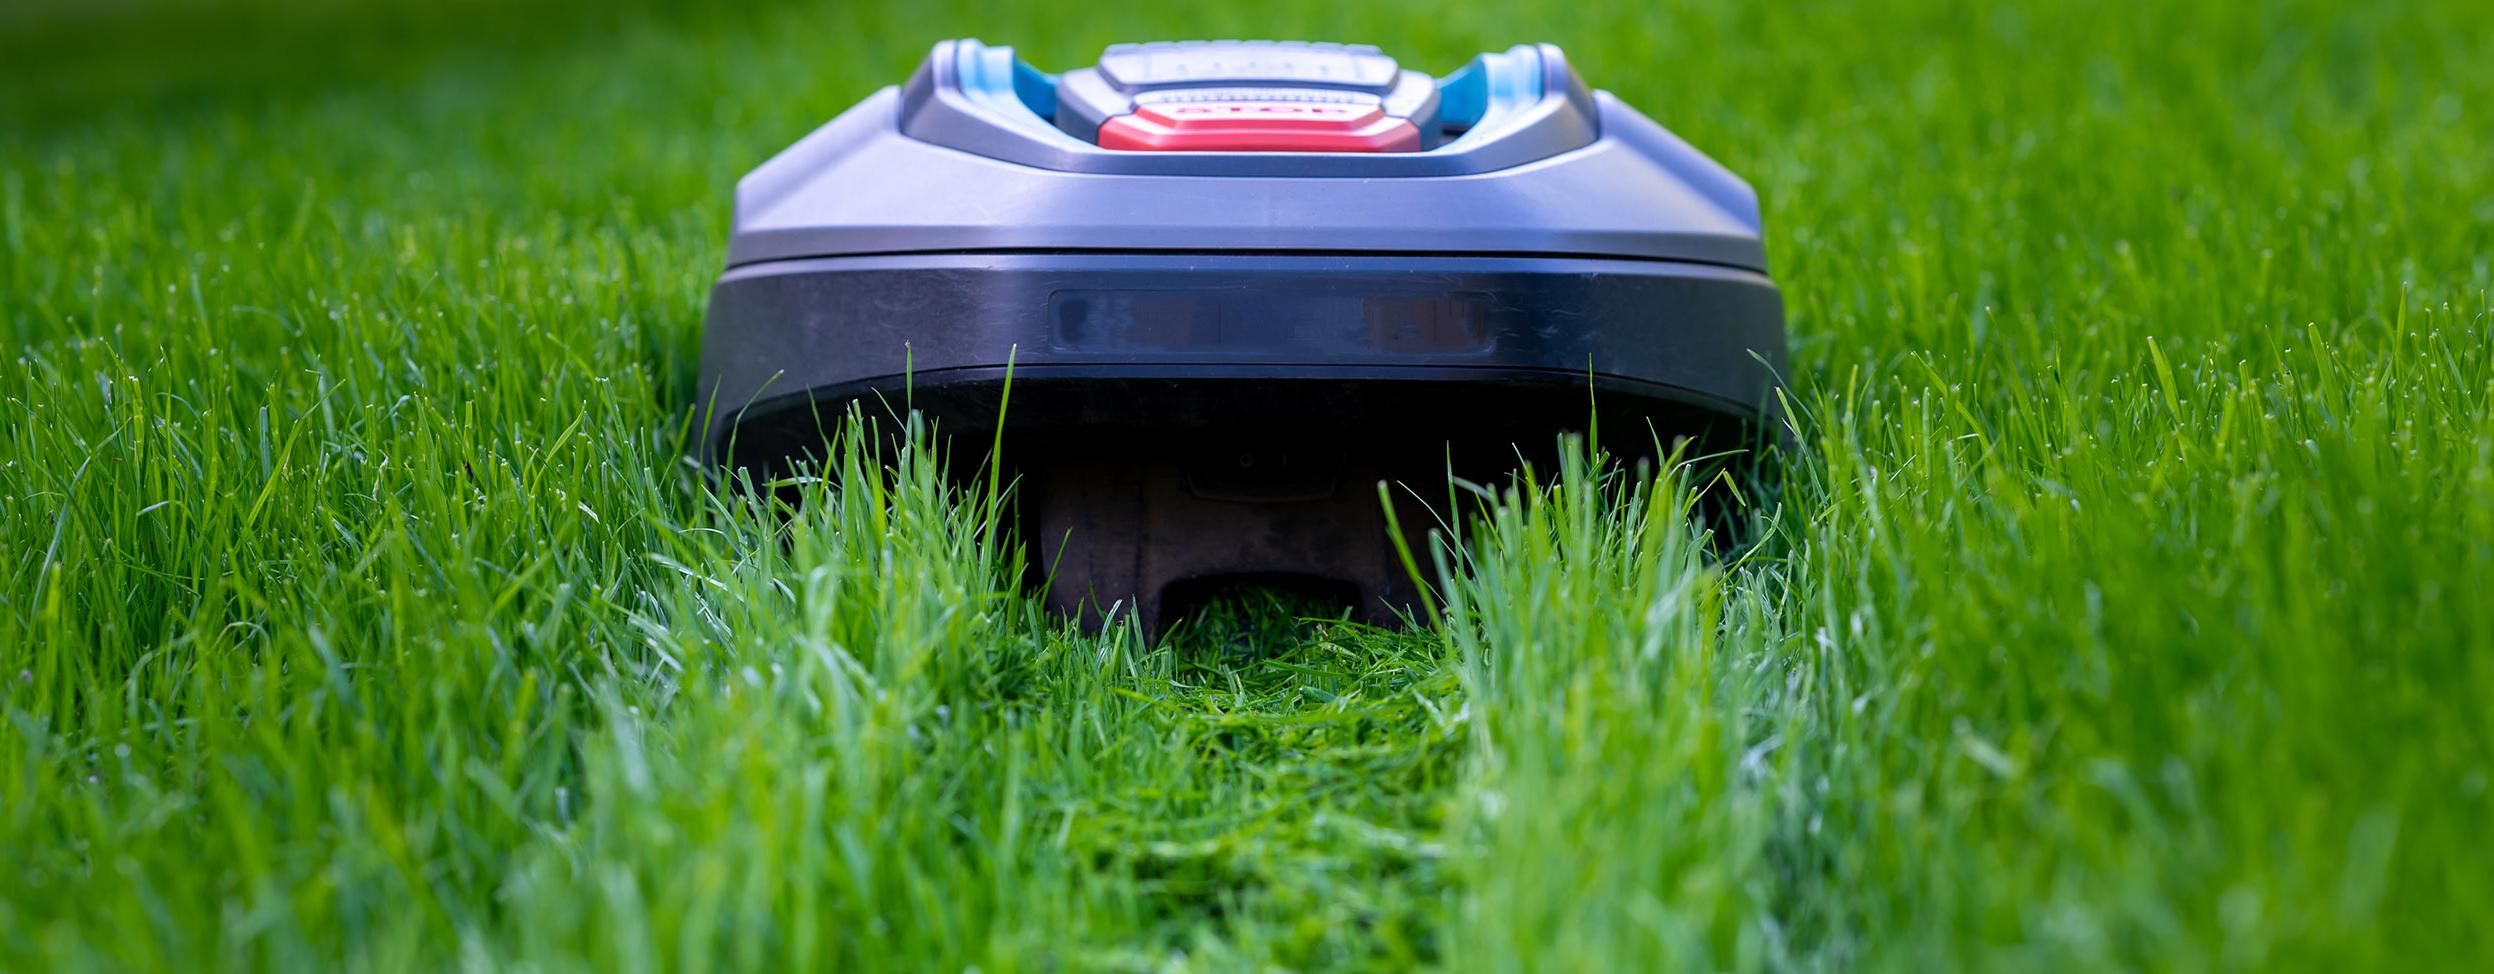 Ein Mähroboter mäht eine Bahn mitten in einen grünen Rasen.